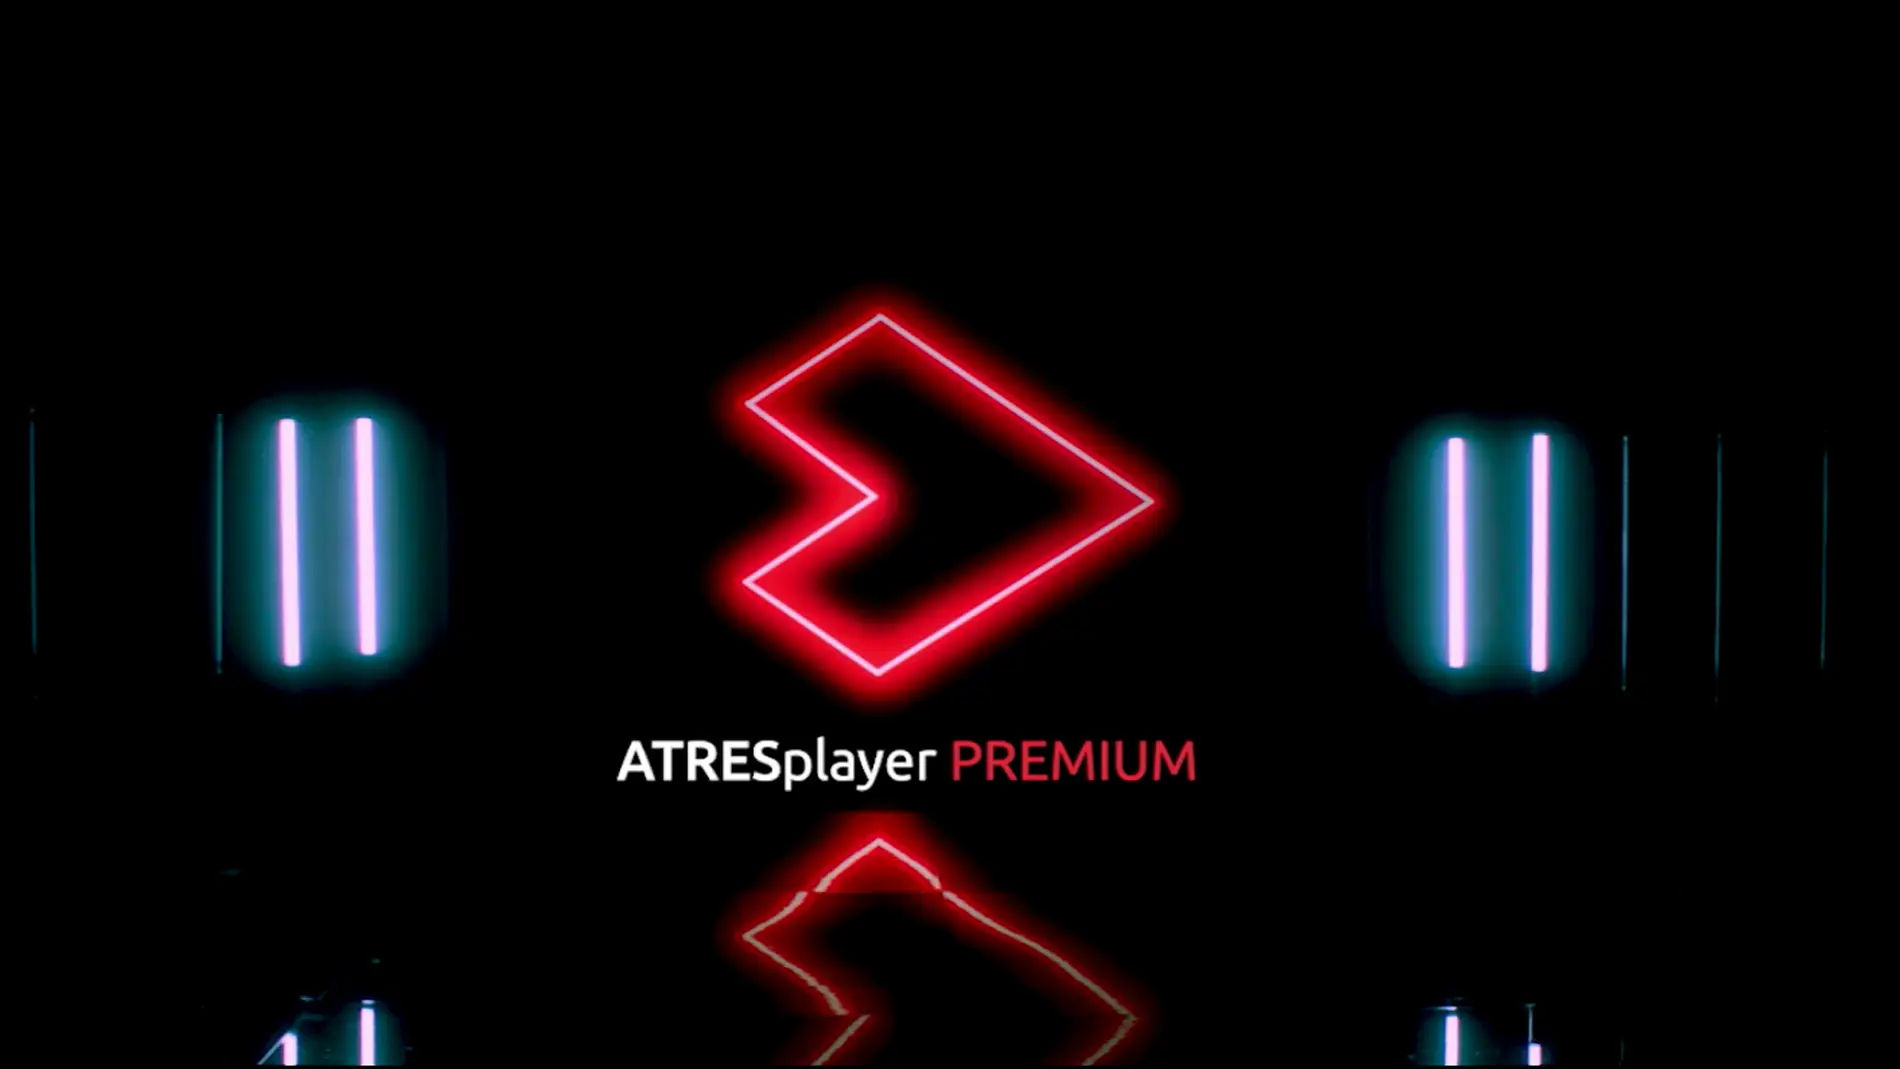 ATRESplayer PREMIUM - ATRESplayer PREMIUM consolida su crecimiento con un aluvión de nuevos proyectos